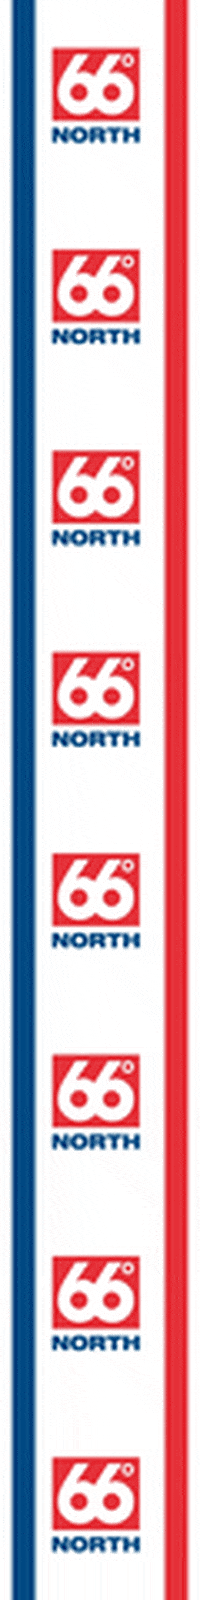 66north 66 66north 66 north 66nordur GIF